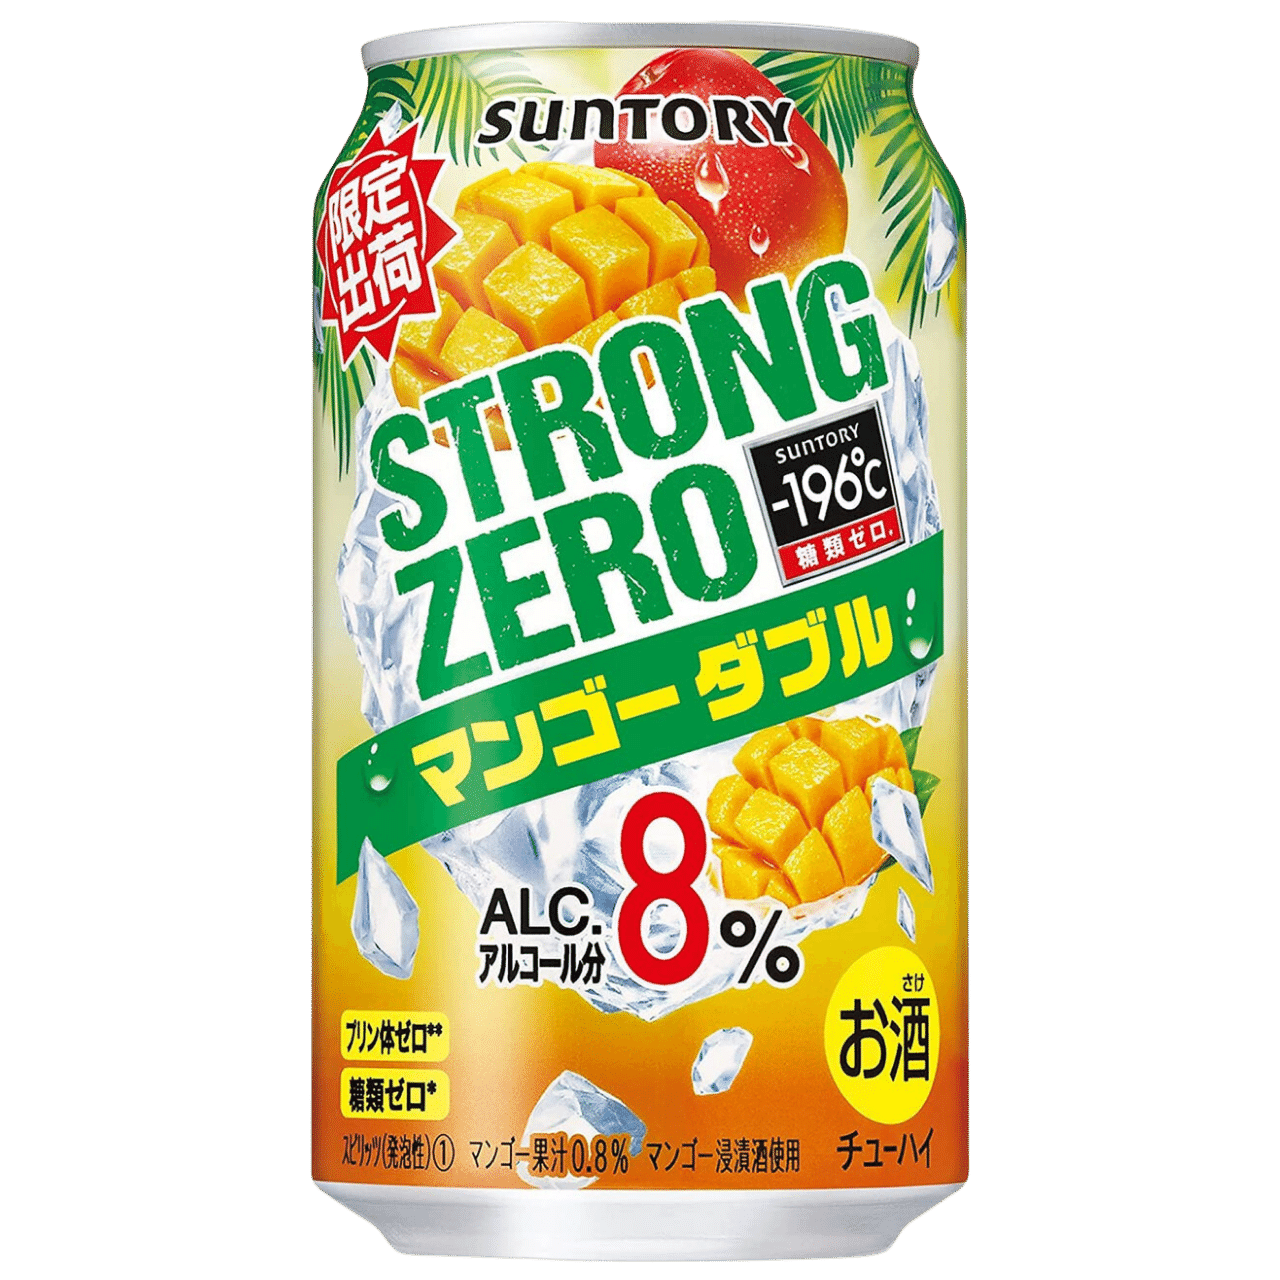 Suntory -196 Strong Zero 9% Cans